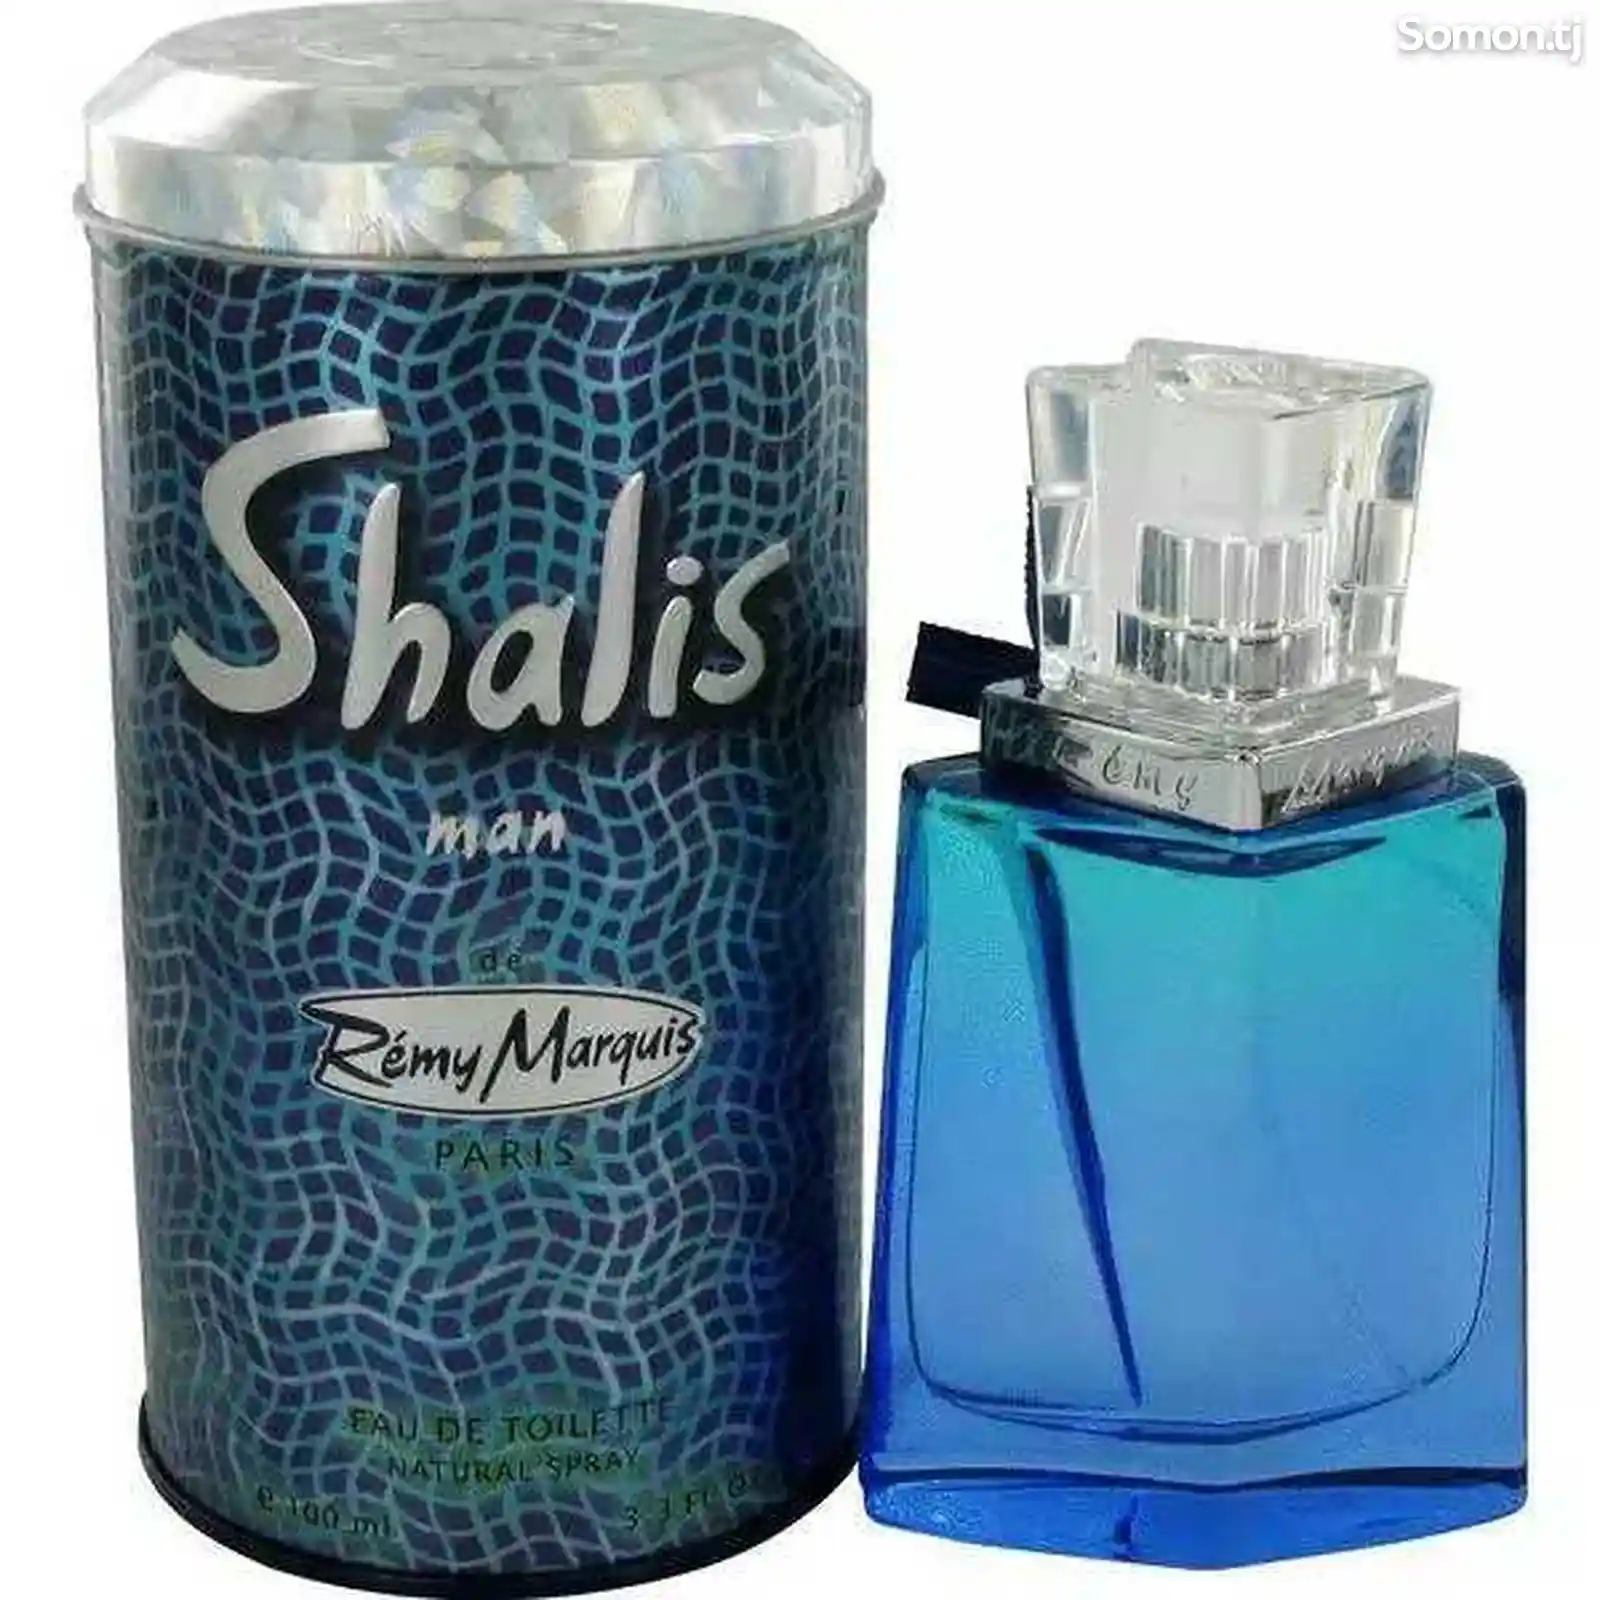 Parfum Shalis man-2